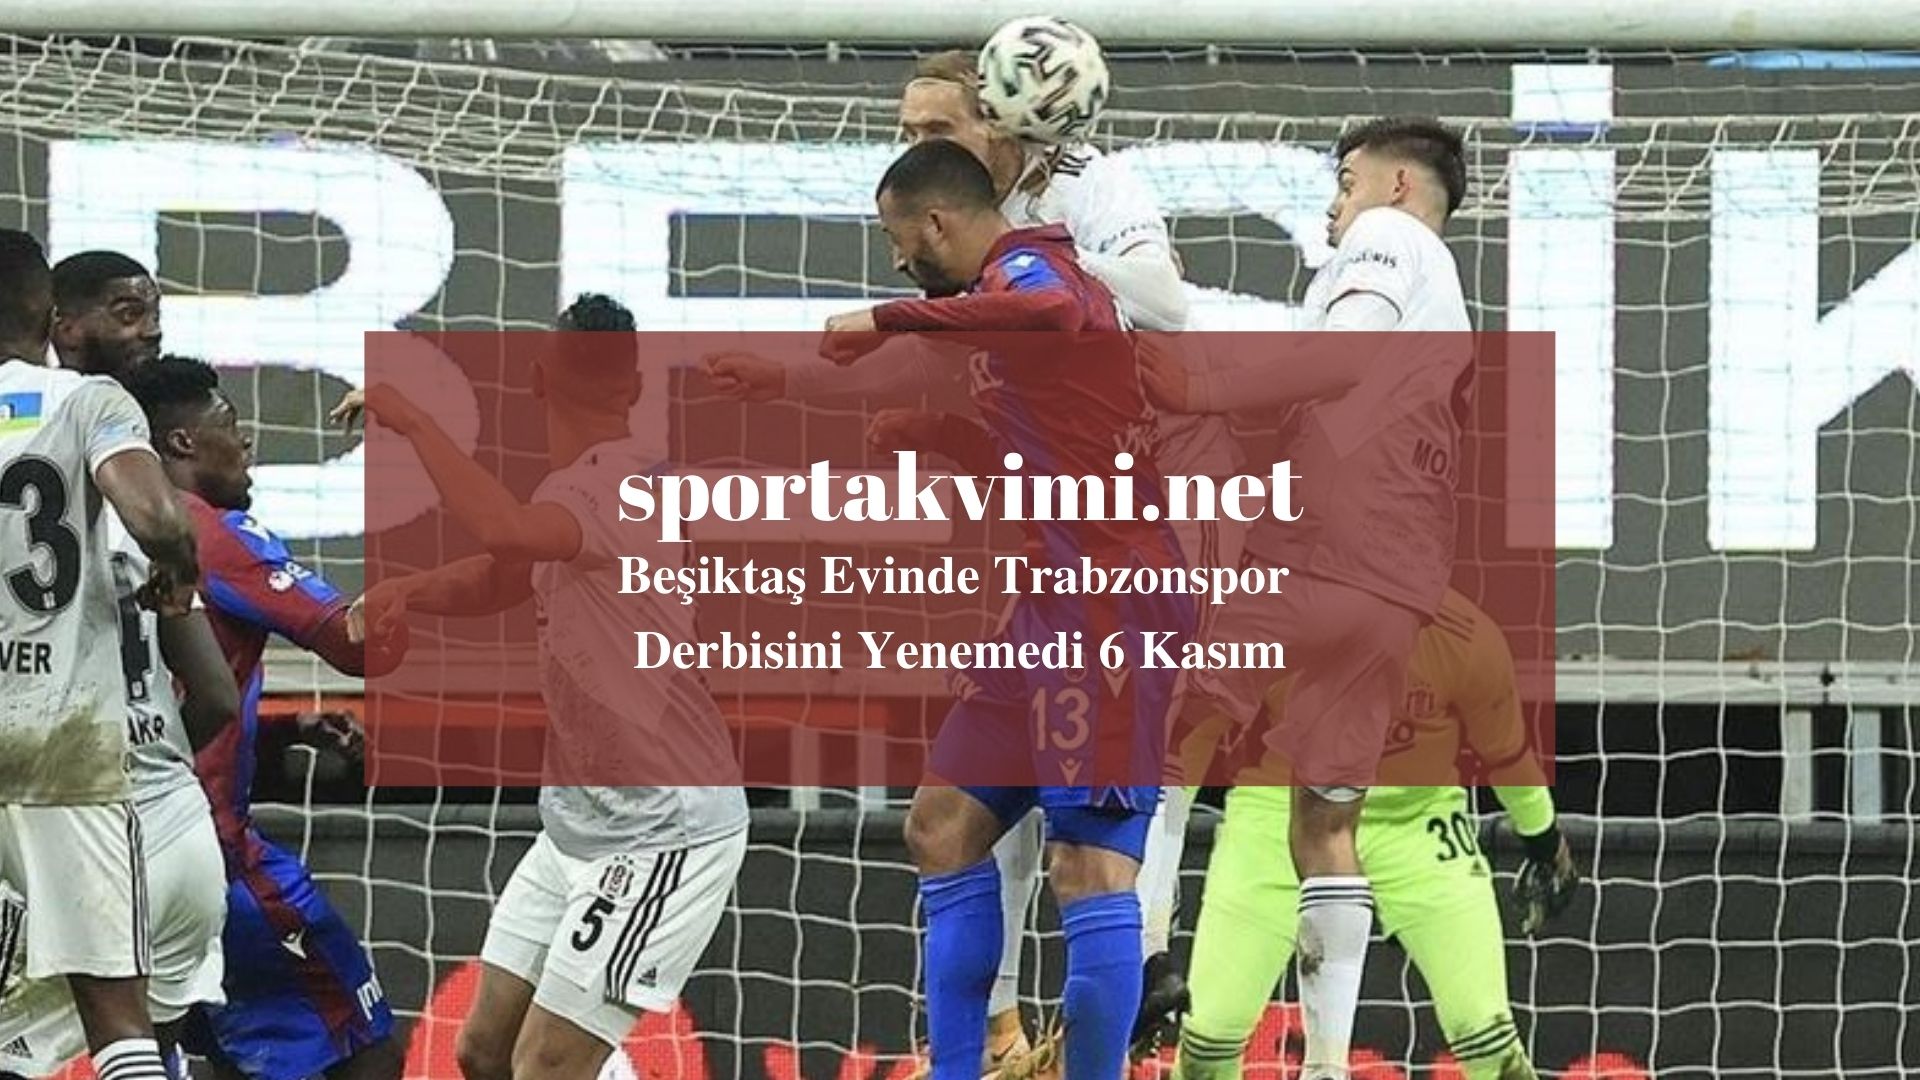 Beşiktaş Evinde Trabzonspor Derbisini Yenemedi 6 Kasım